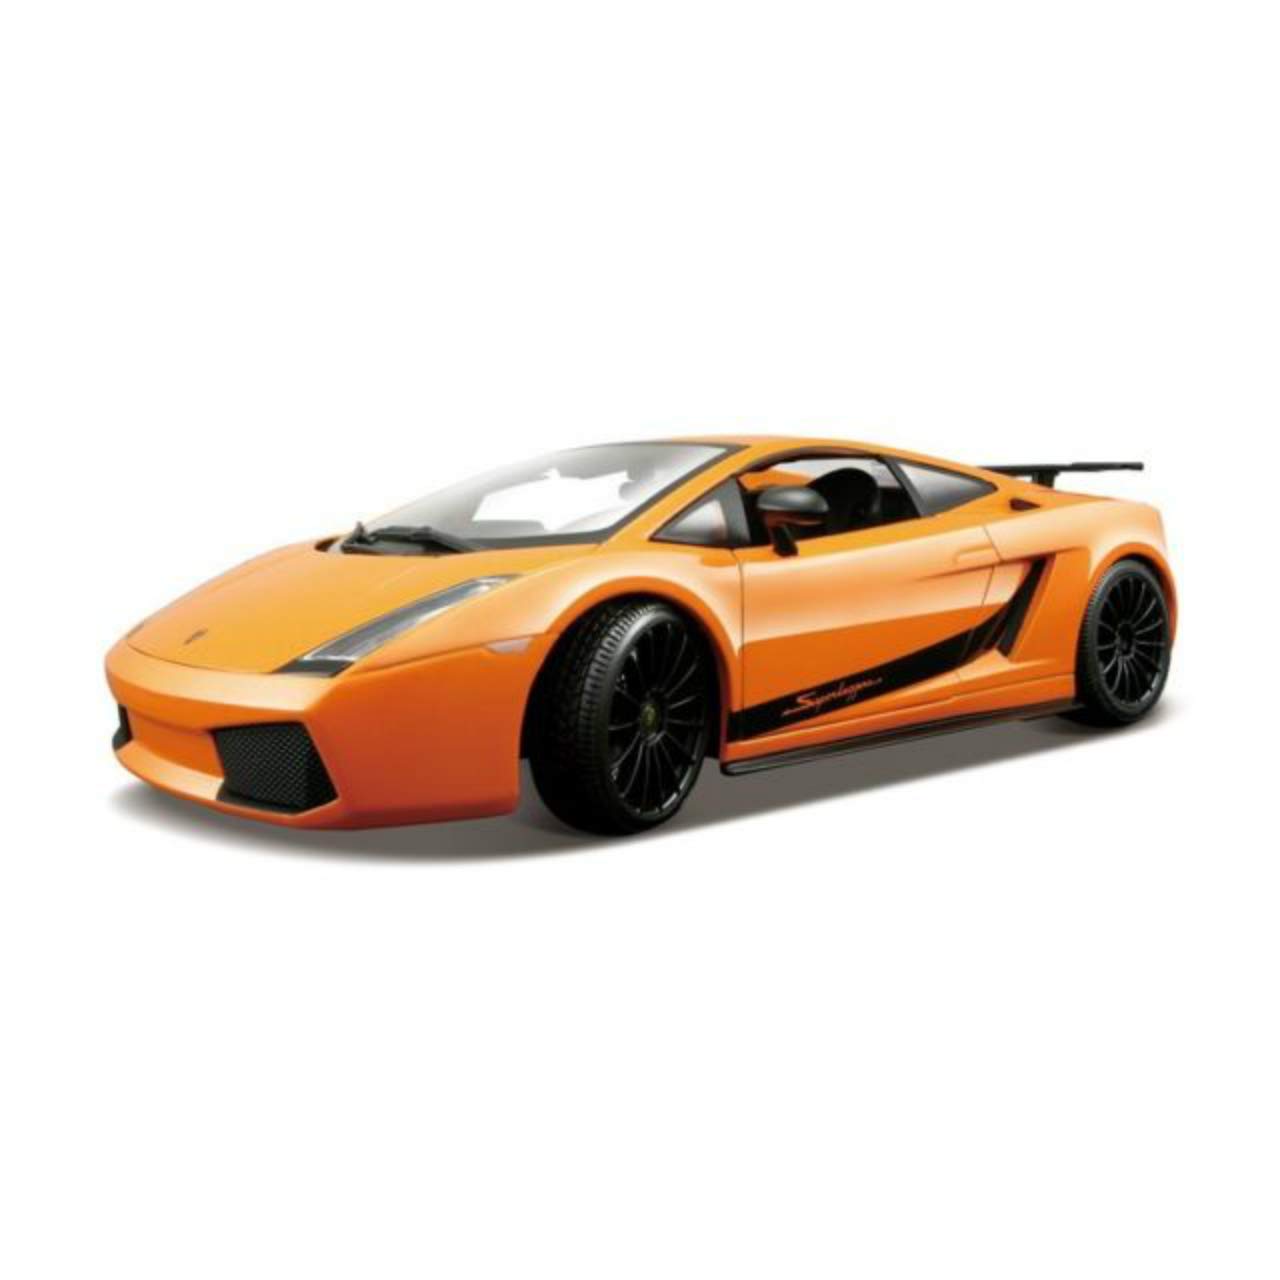 Maisto – Lamborghini Gallardo, Orange (31149Or)